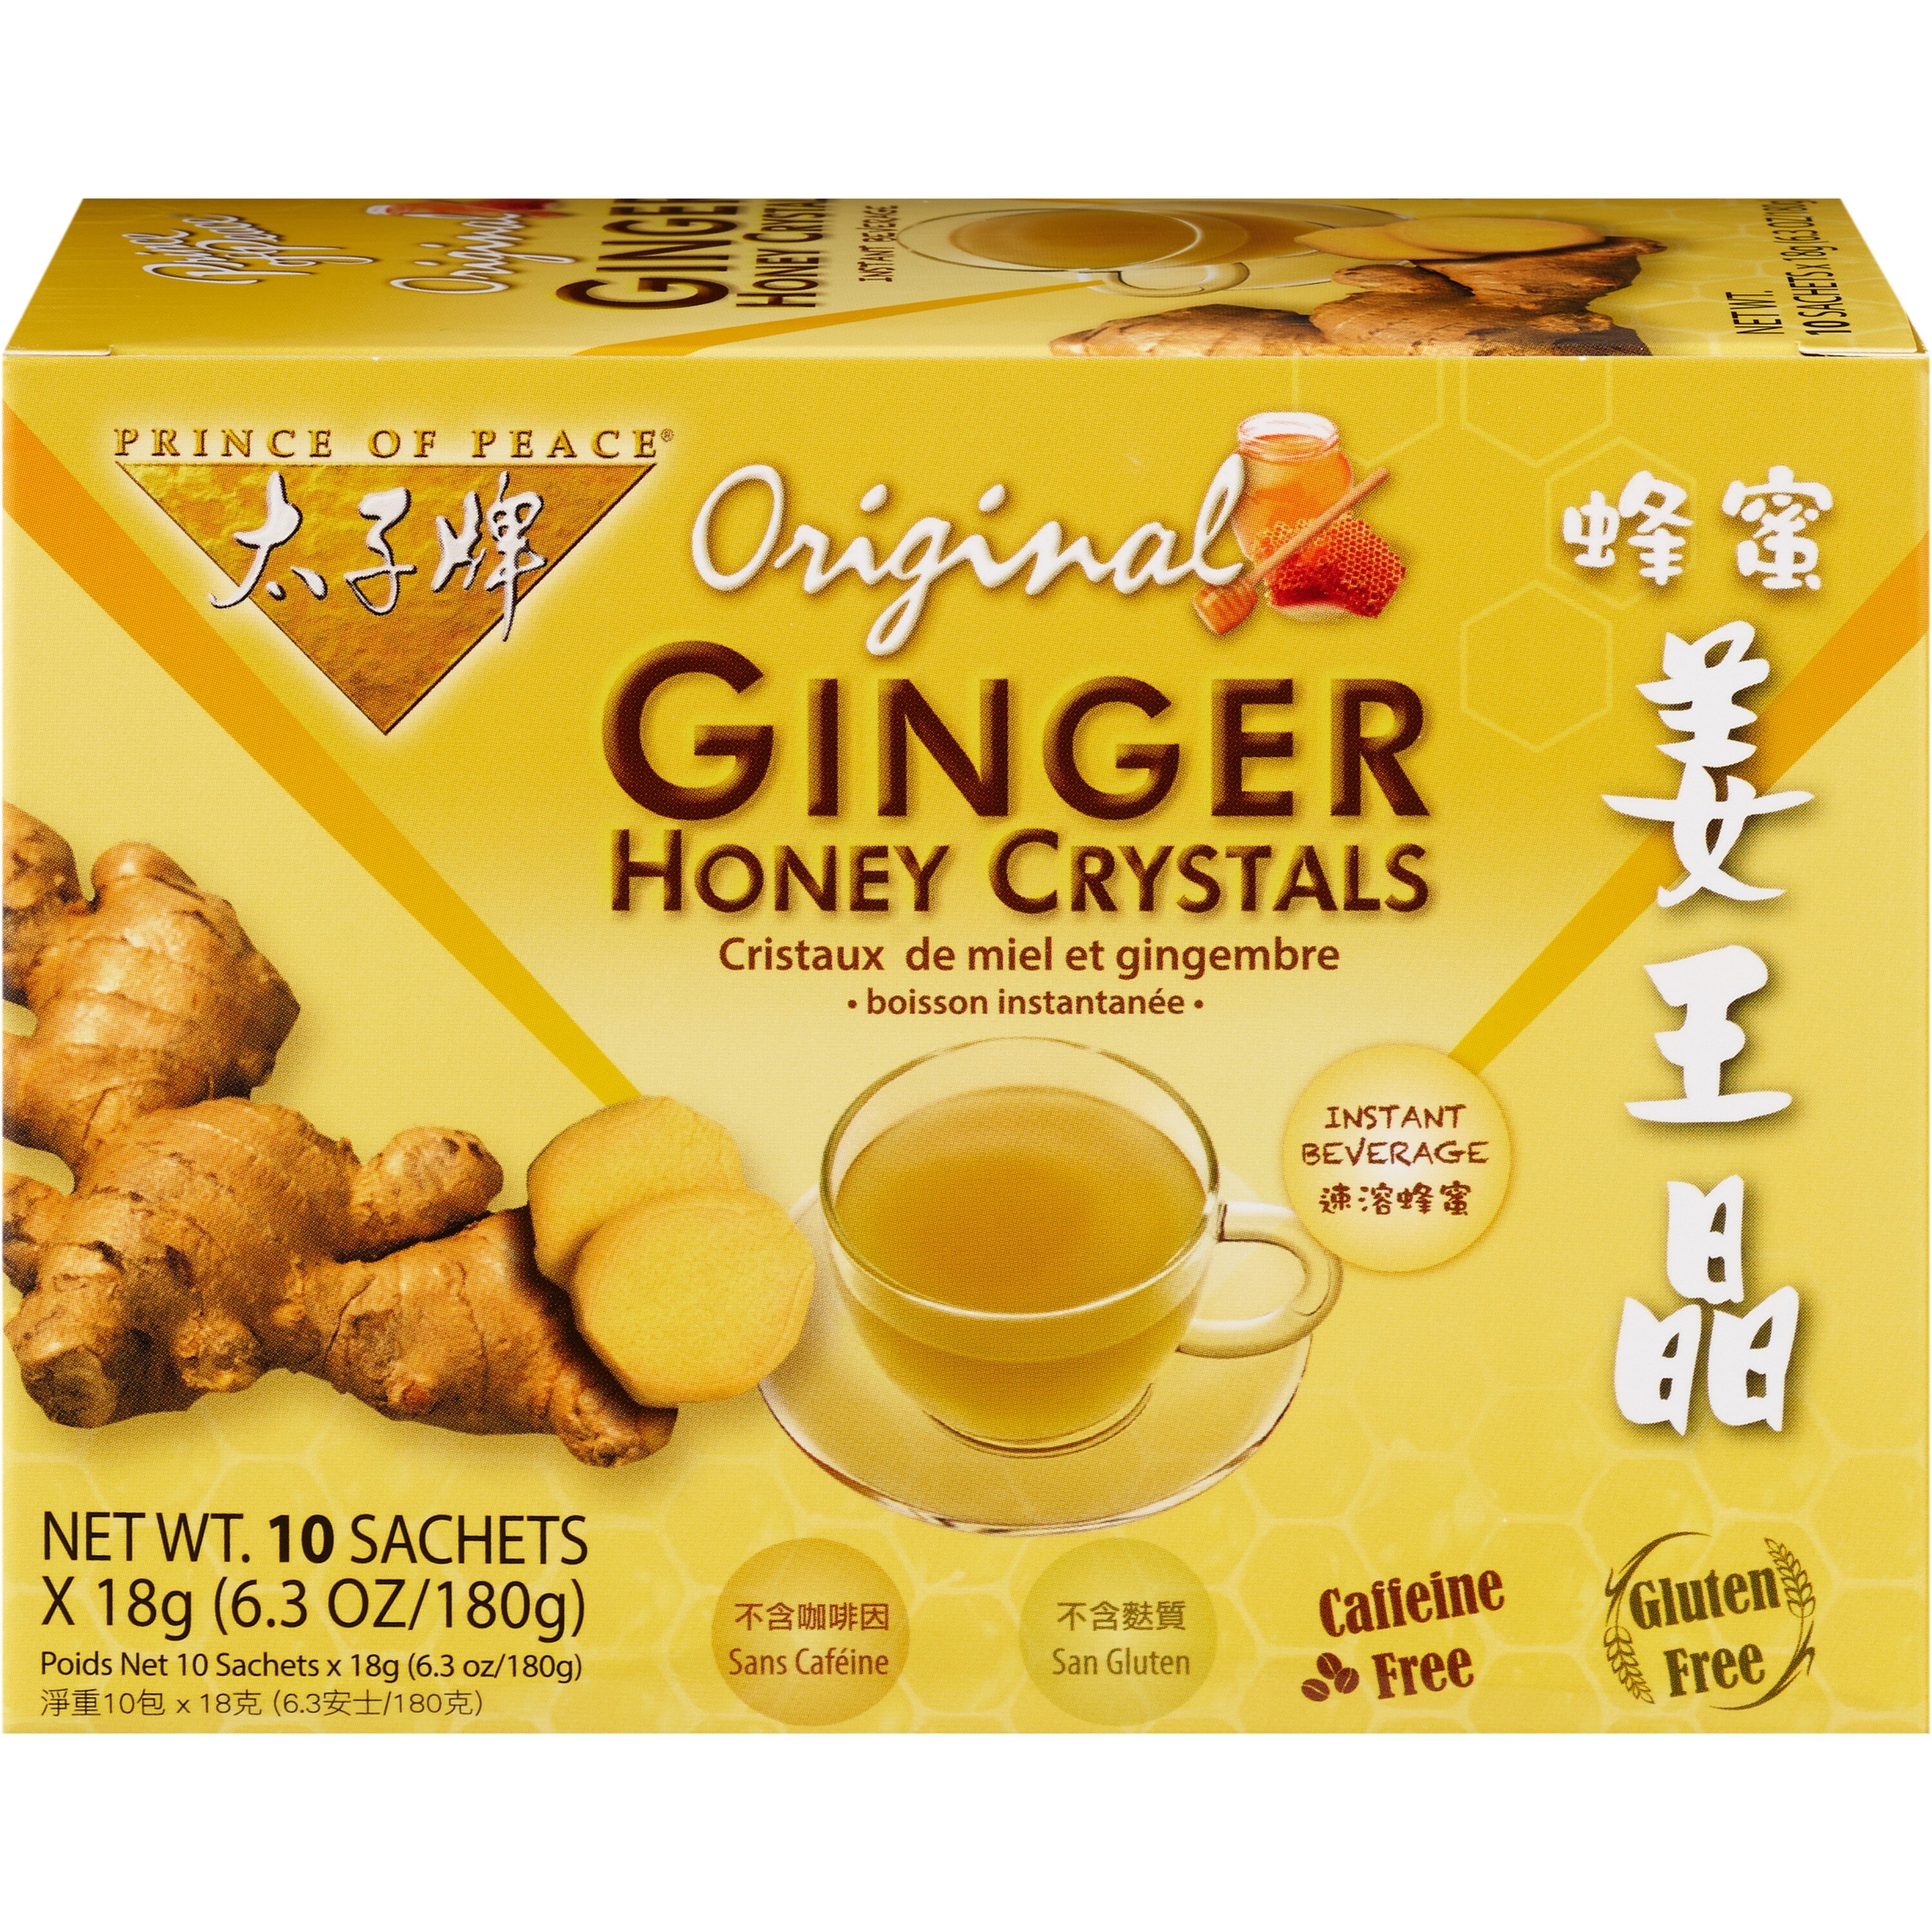 Prince Of Peace Ginger Honey Crystals, Original, 10 Ct - 6.3 Oz , CVS